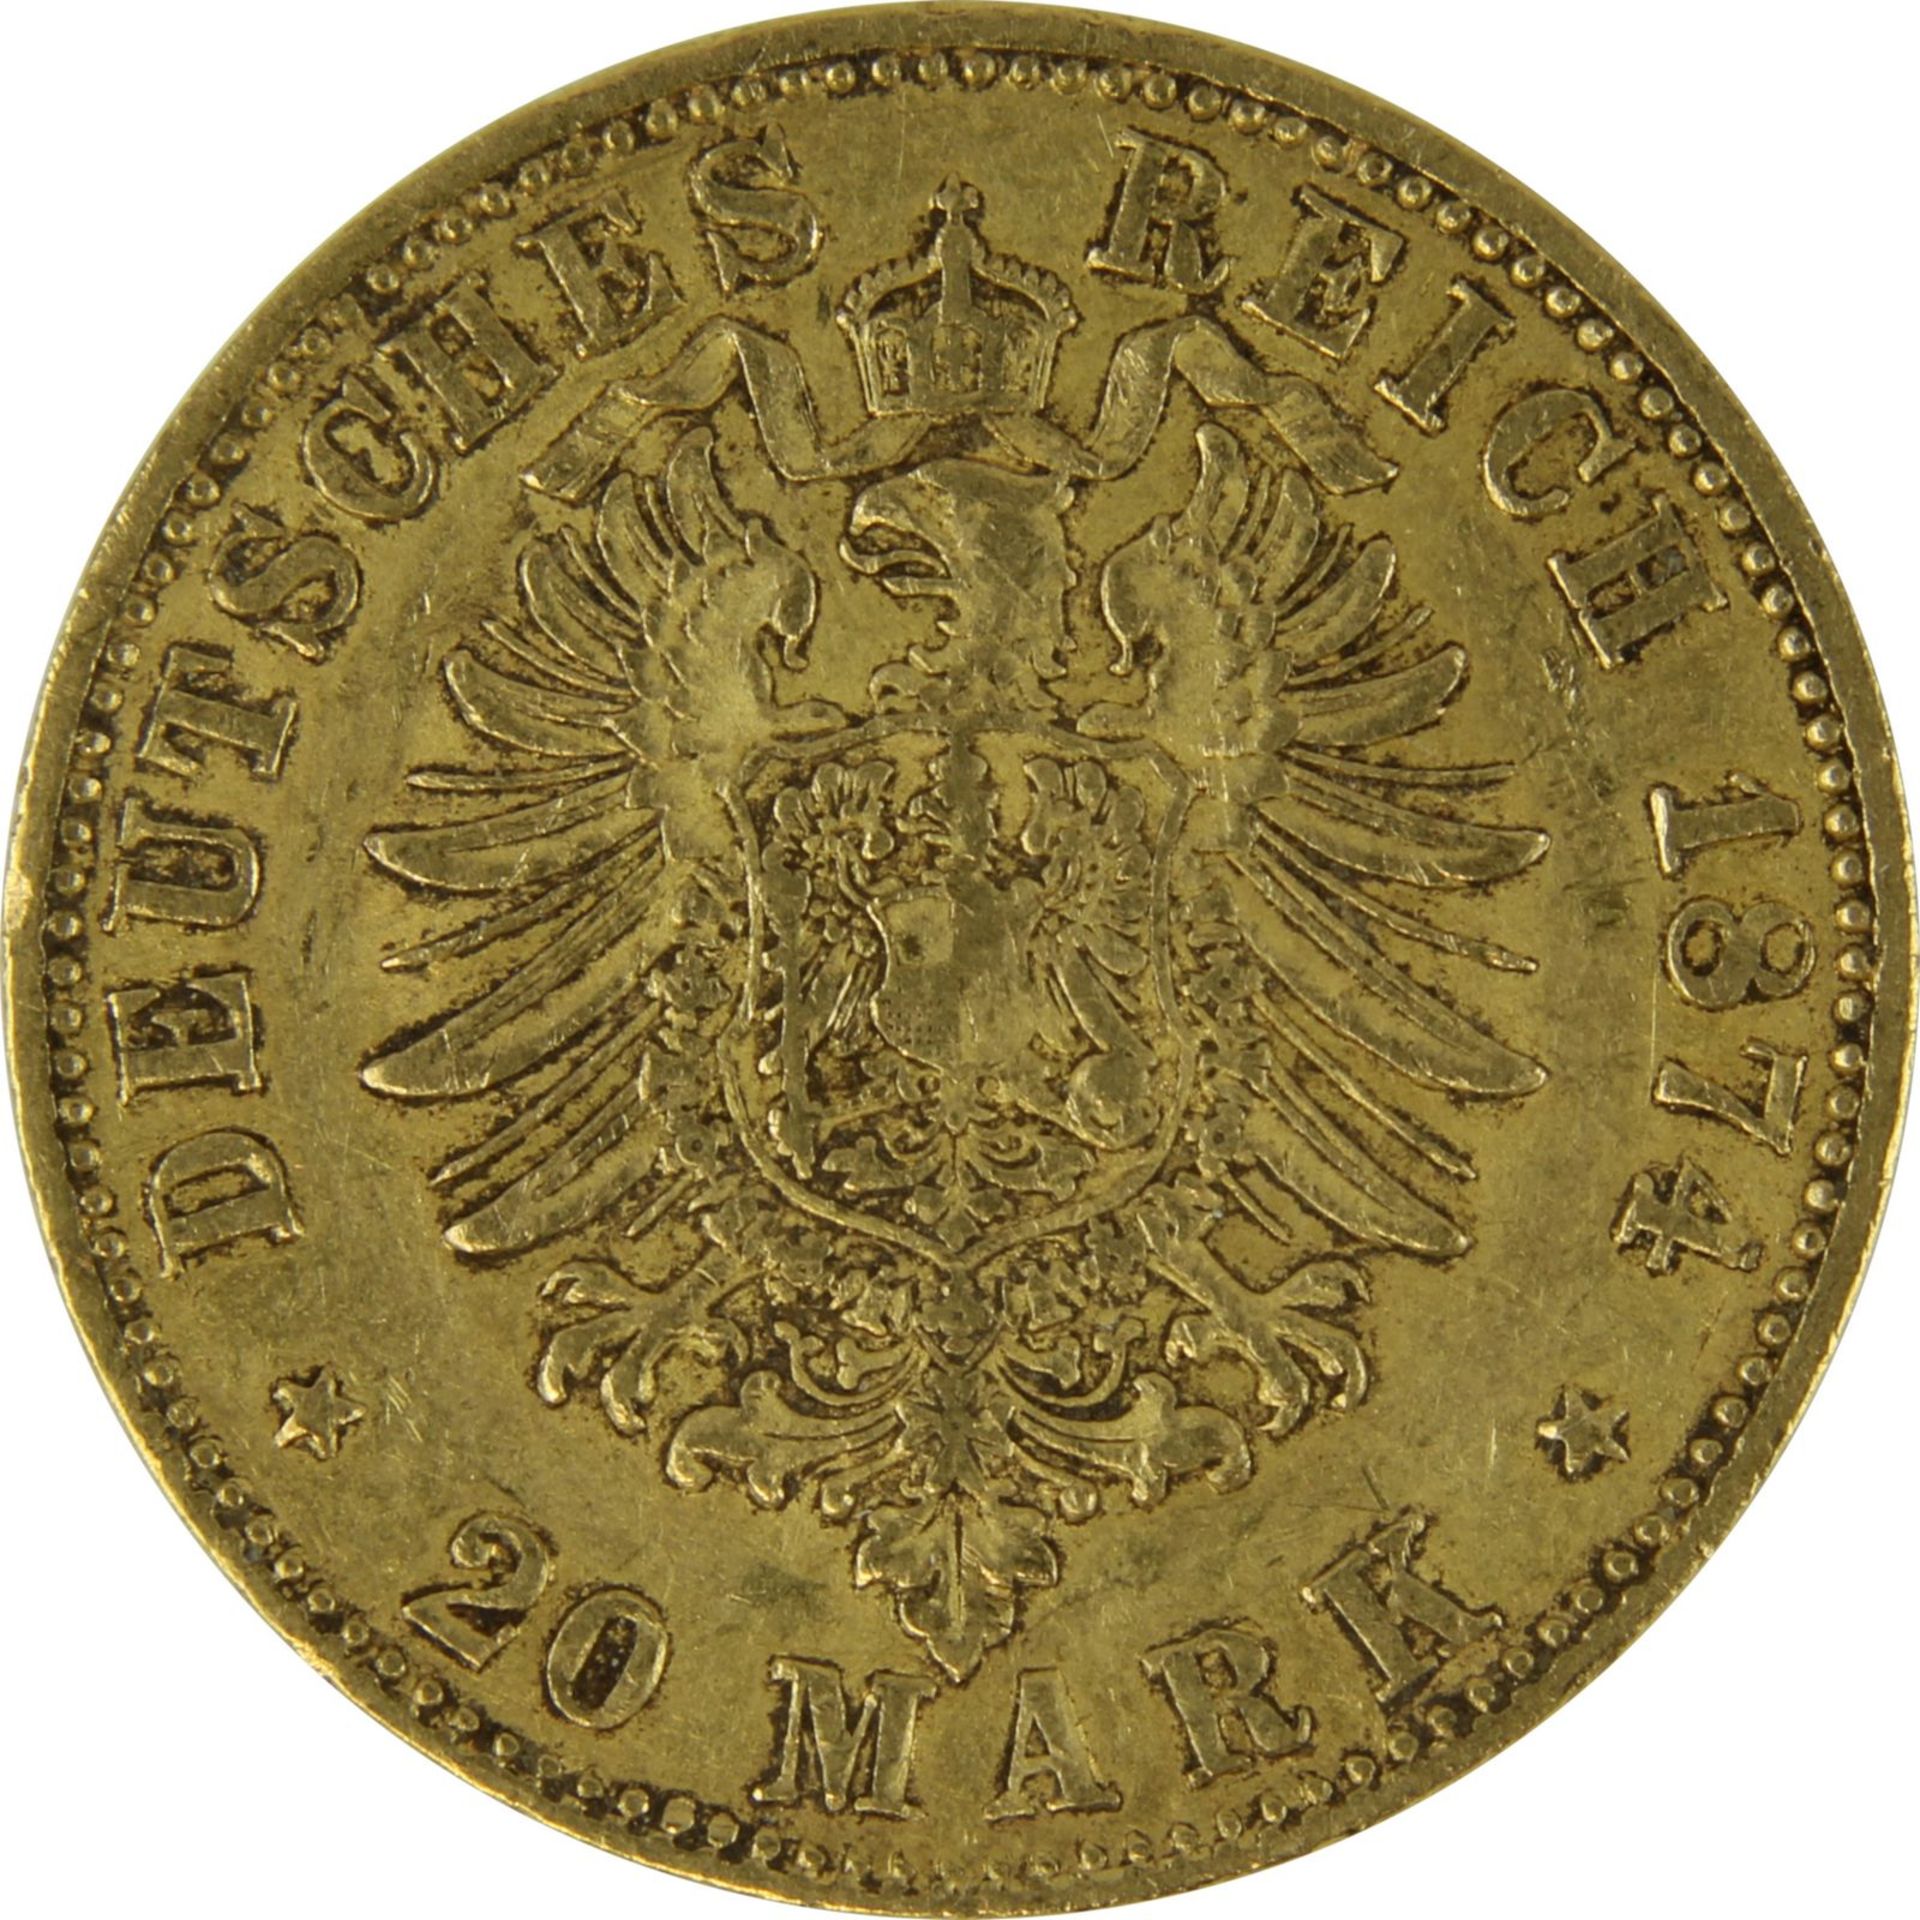 Goldmünze zu 20 Mark, Baden - Deutsches Reich 1874, Avers: Kopf Friedrich Grosherzog von Baden - Image 3 of 3